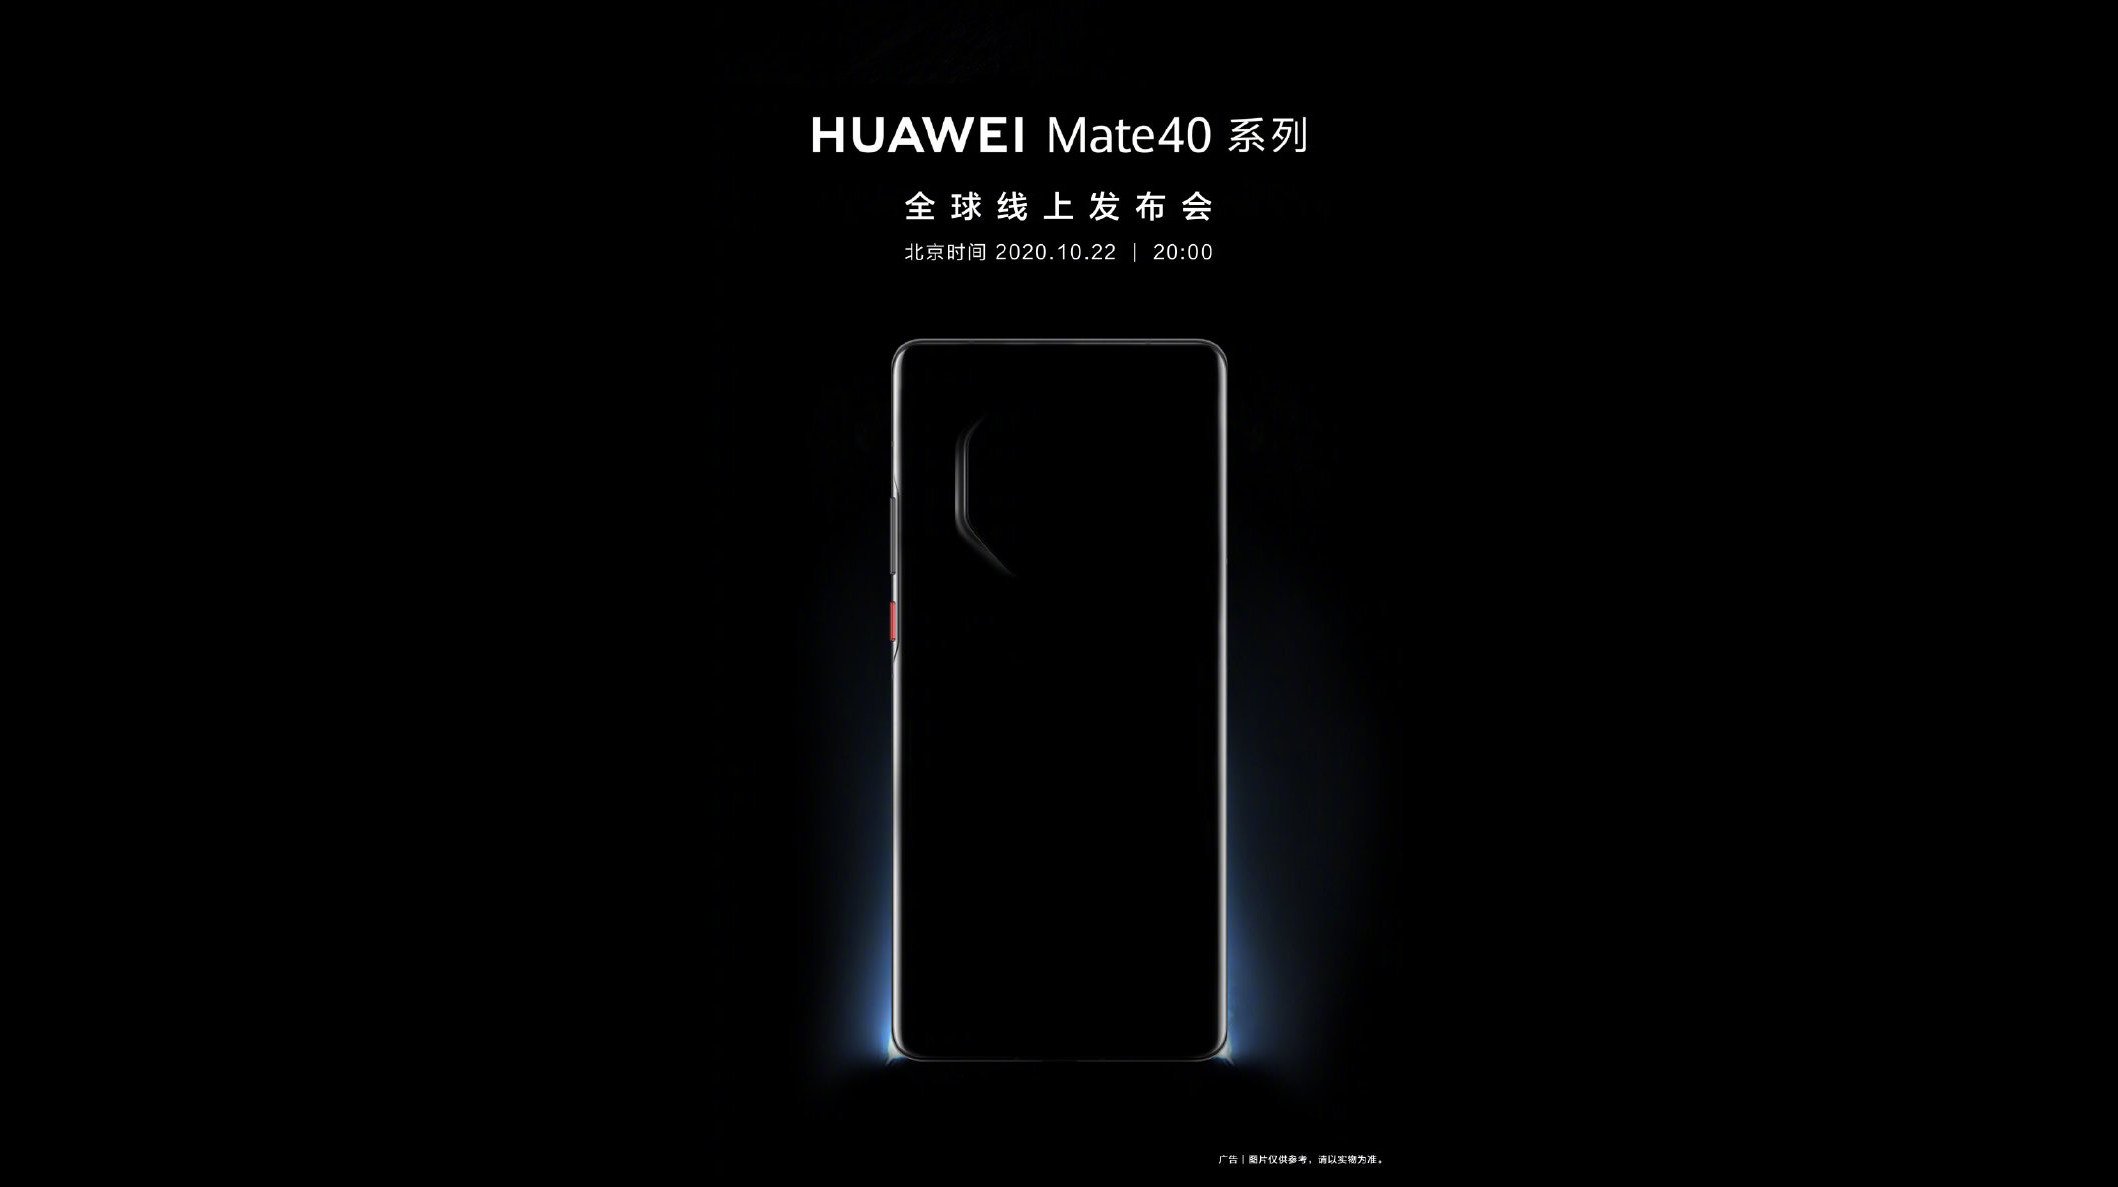 Huawei hat ein erstes Bild des Hauwei Mate 20 auf Weibo gepostet.